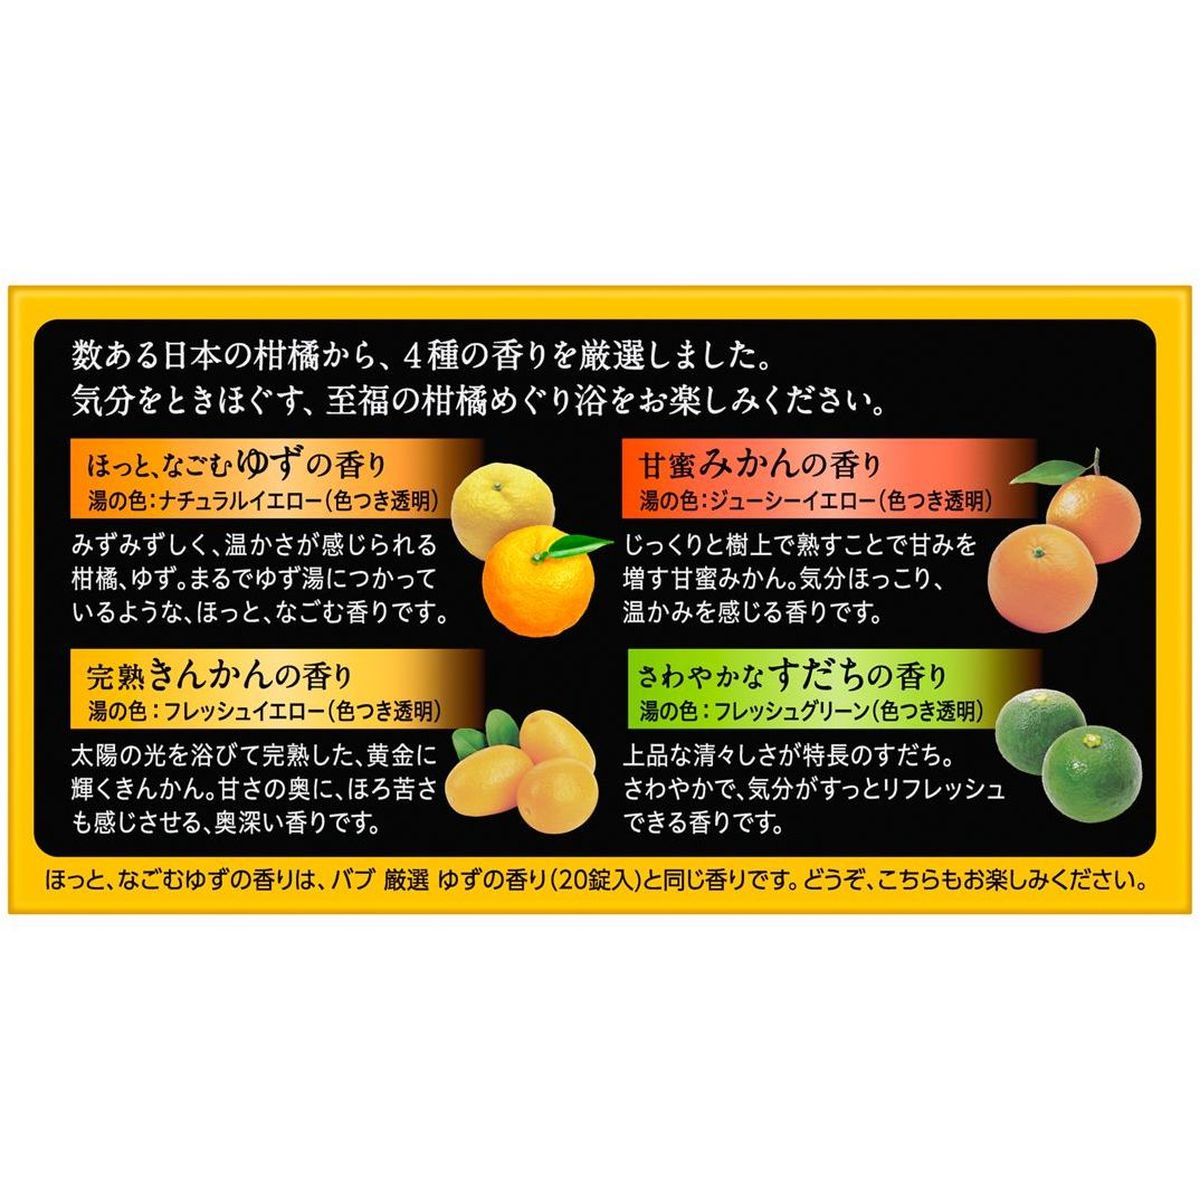 バブ 入浴剤 至福の柑橘めぐり浴 12錠入×12個